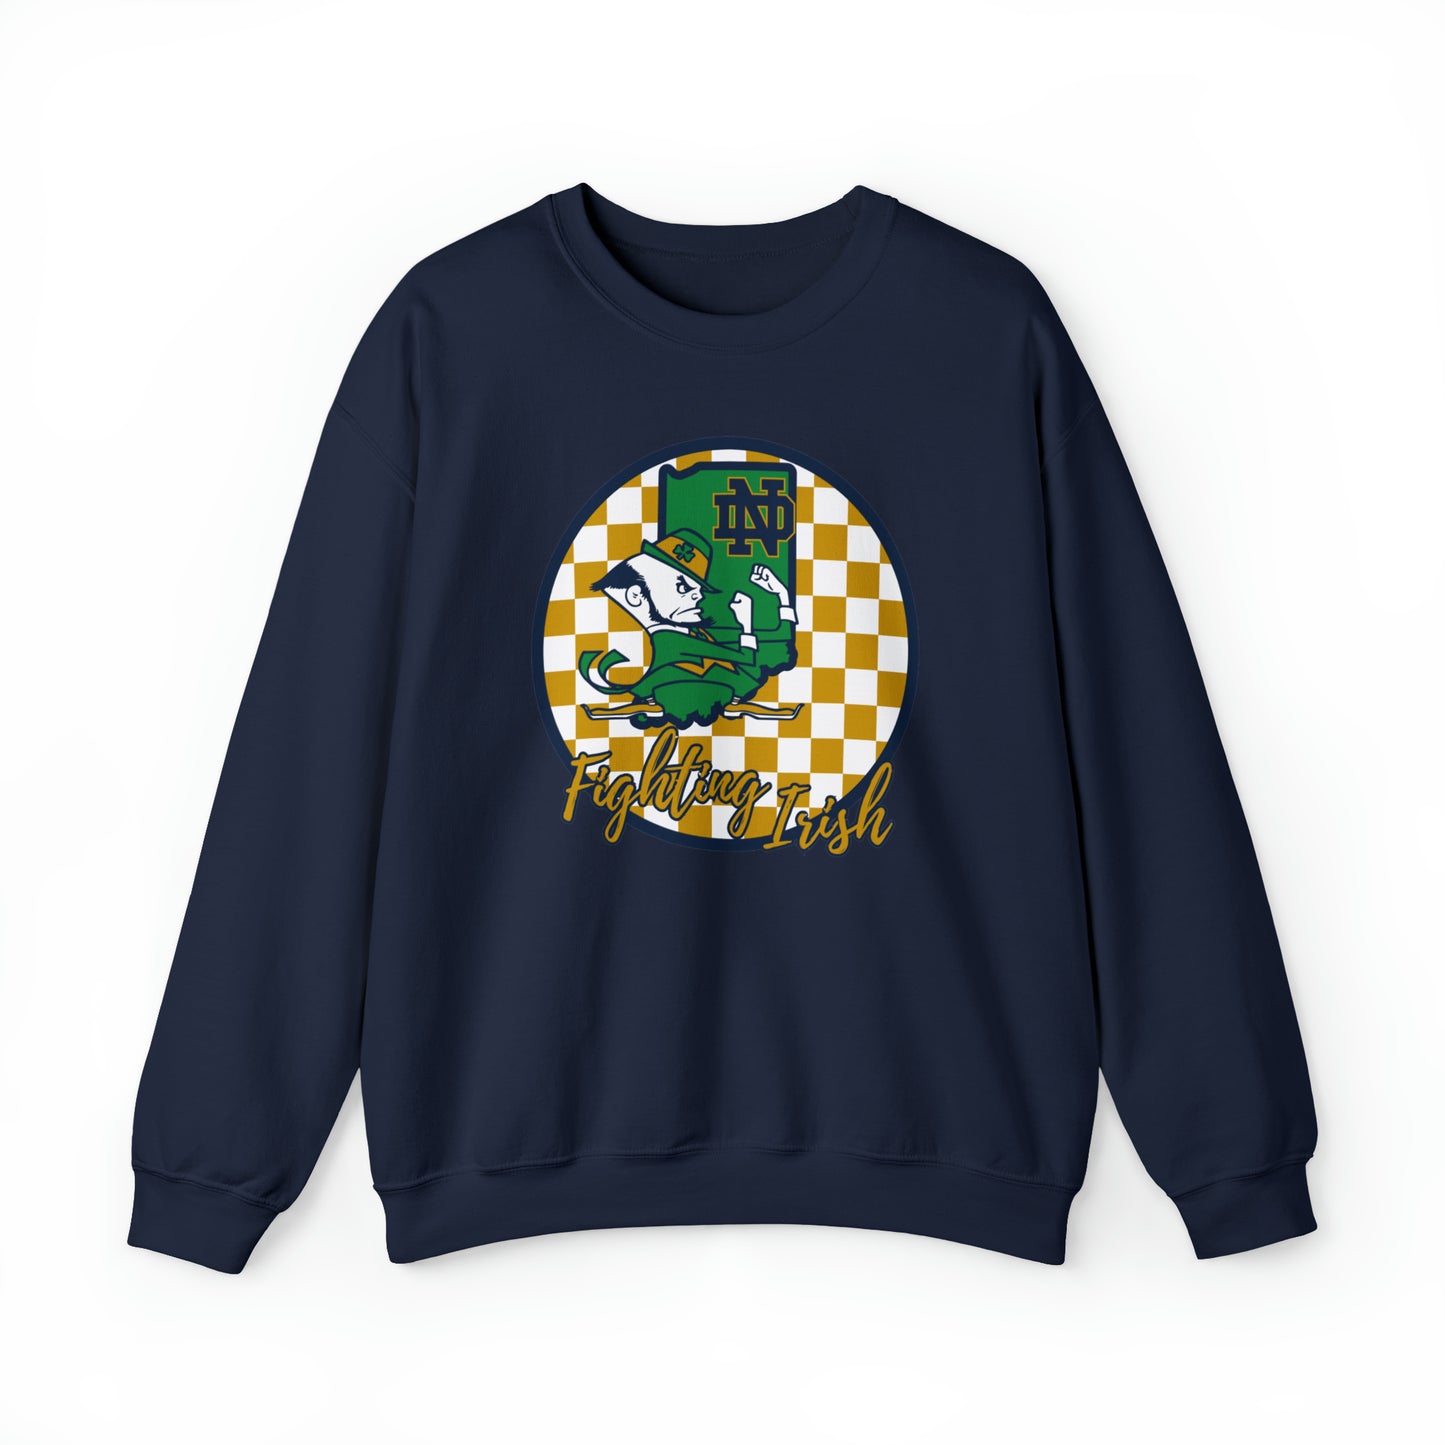 Notre Dame Fighting Irish Checkered Sweatshirt